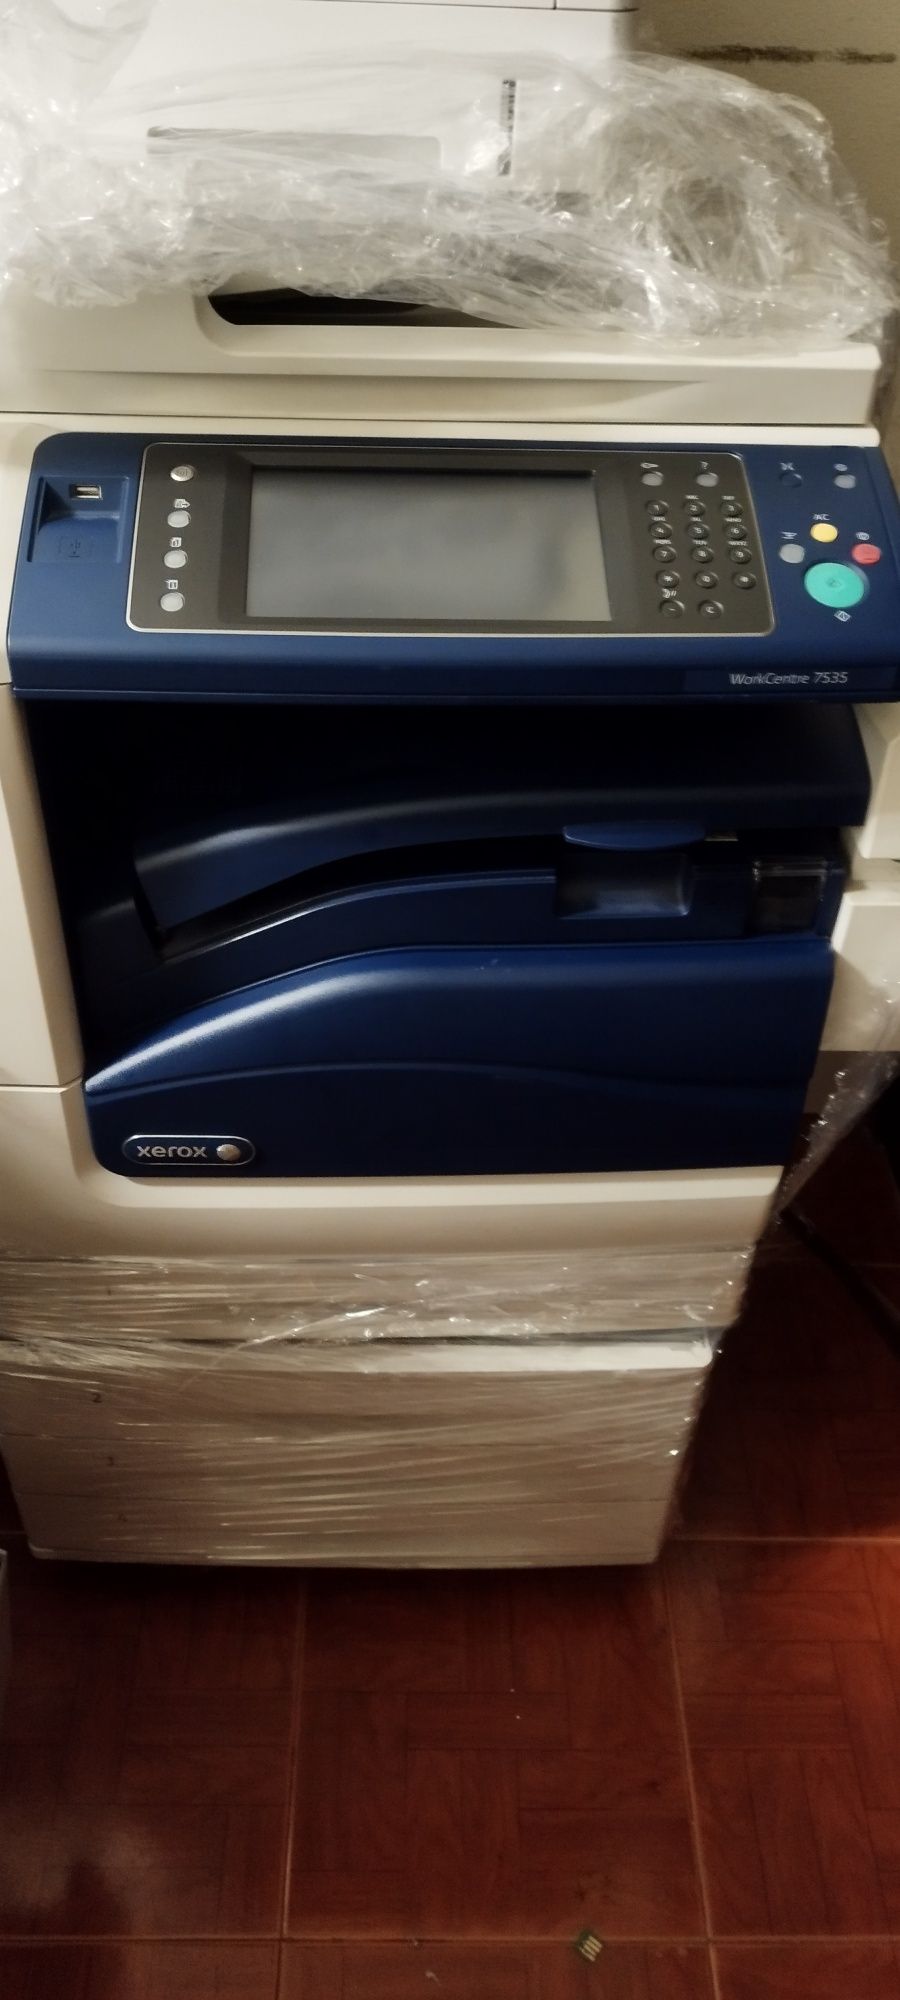 Impressora multifuncional com finalizador vinco e agrafar - Xerox 7535